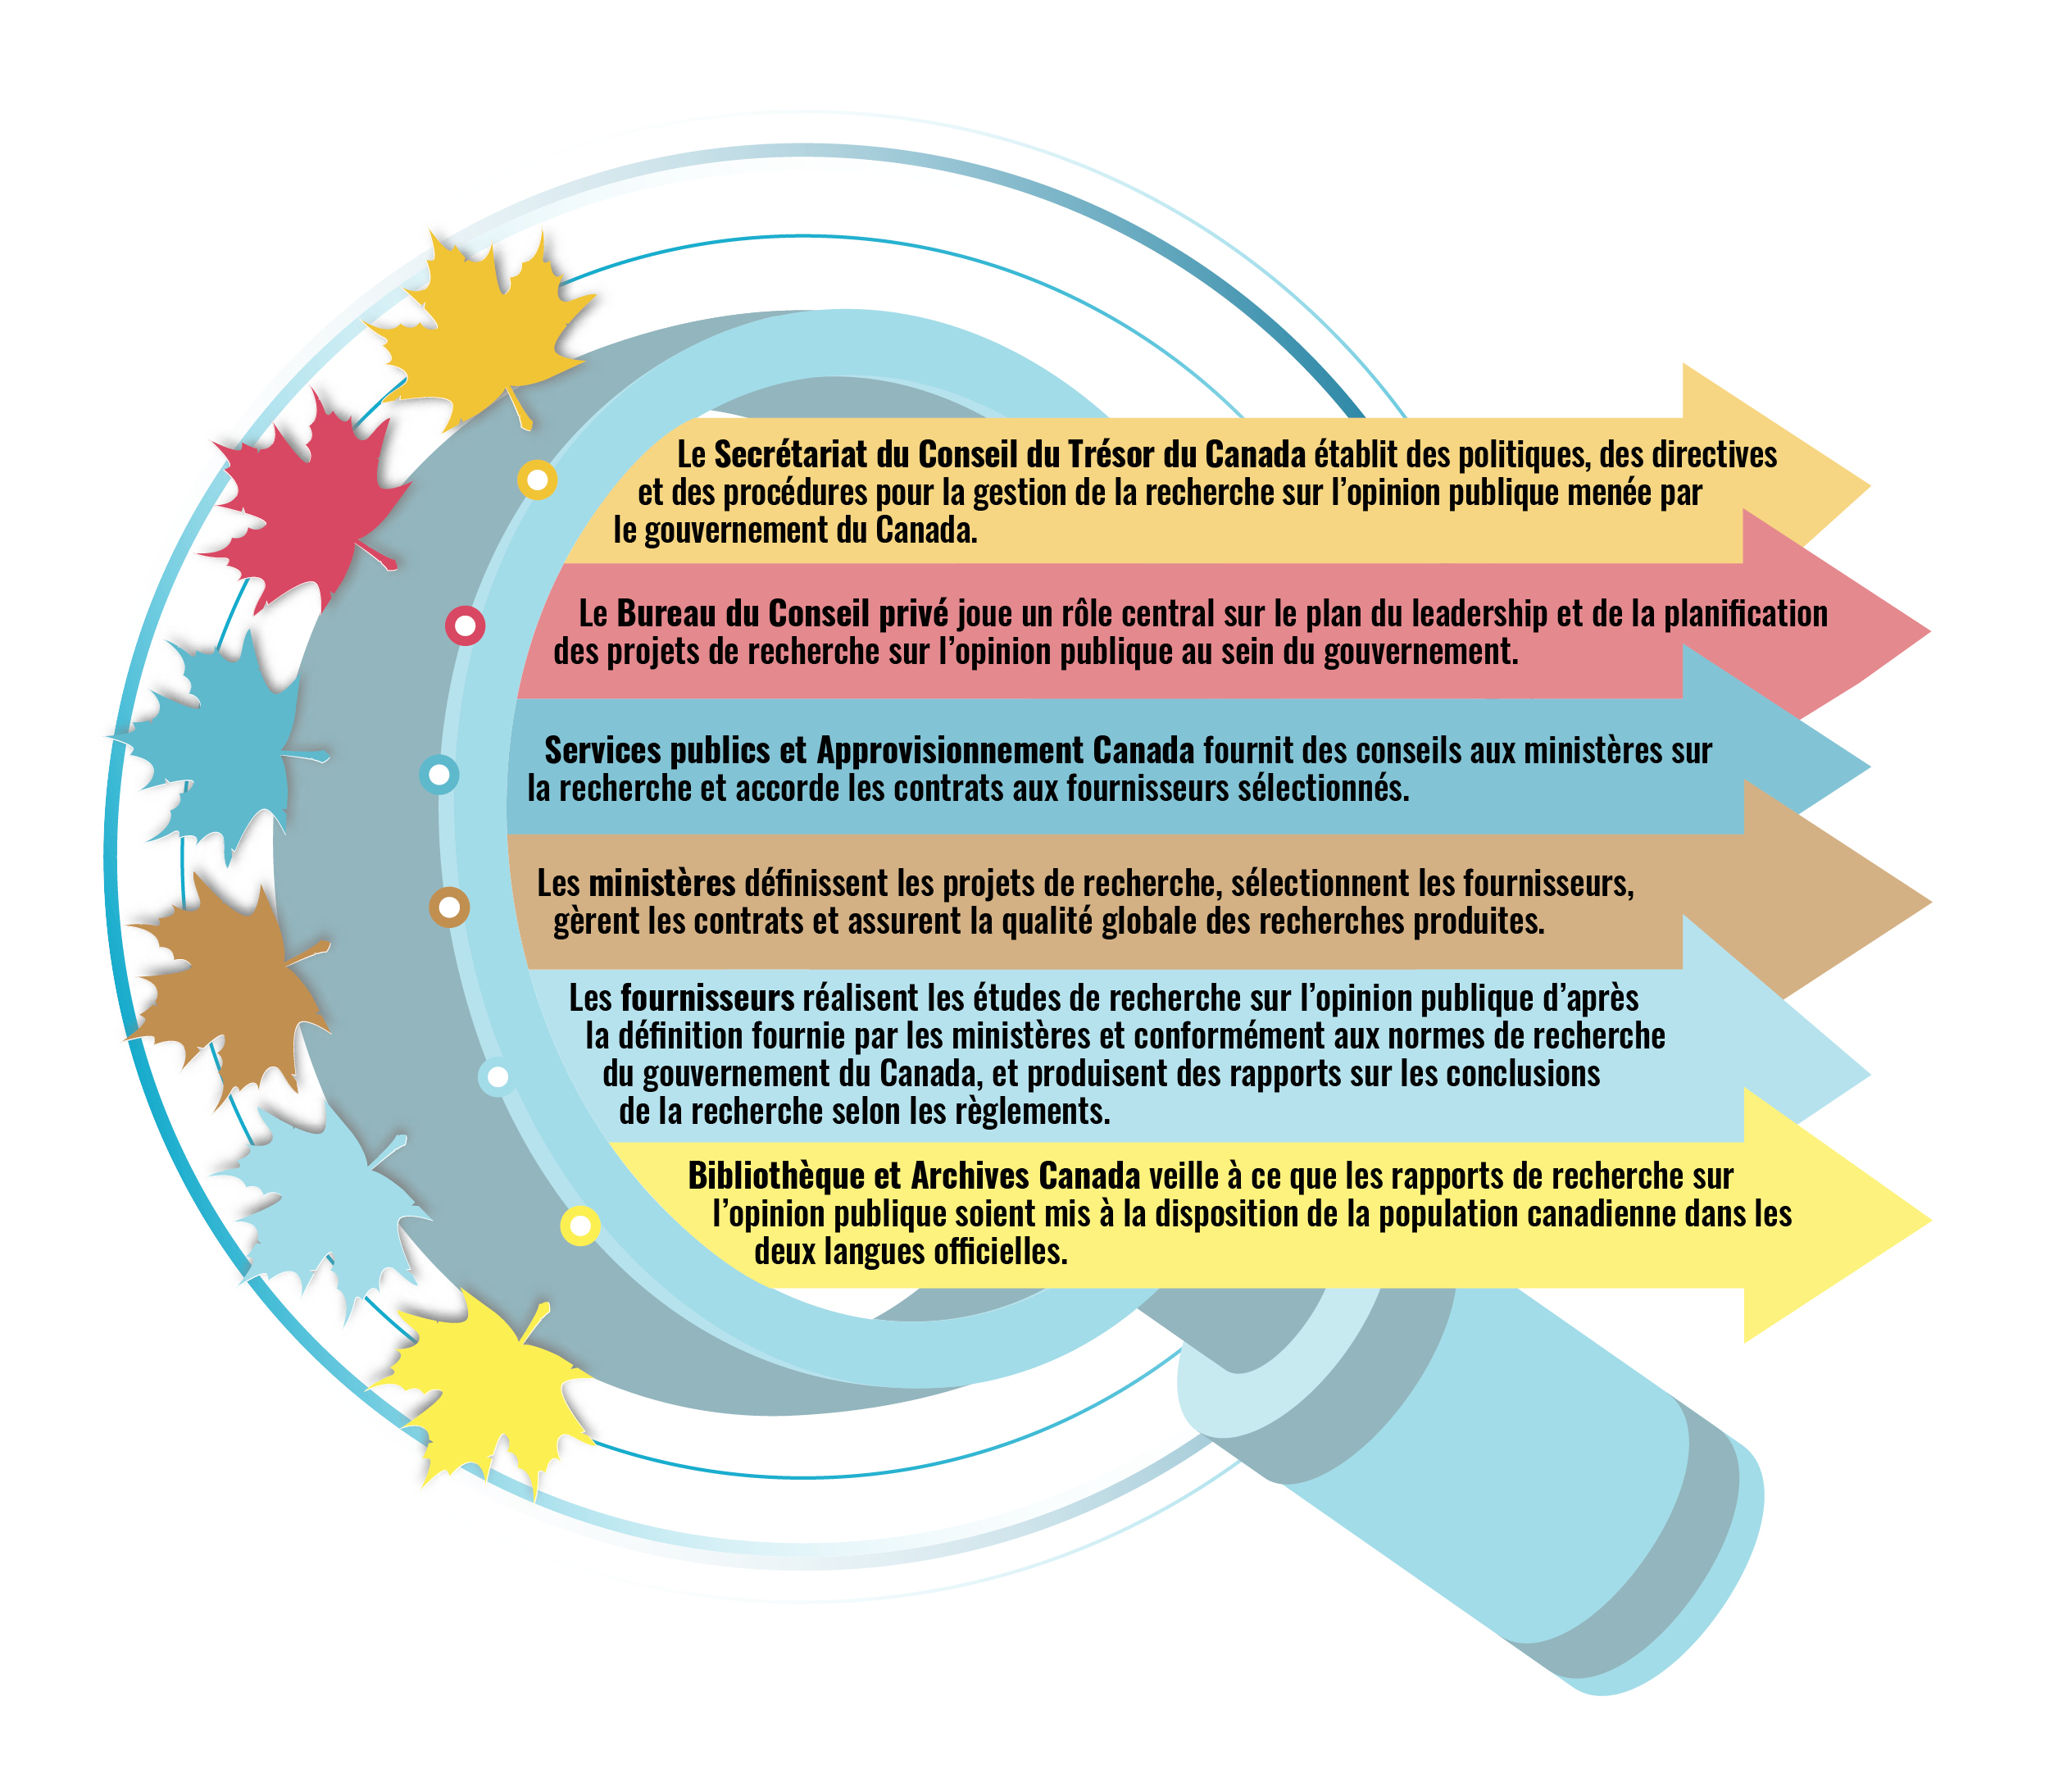 Cette image liste les intervenants et leurs rôles respectifs concernant les activités de recherche sur l'opinion publique au gouvernement du Canada - Description ci-dessous.